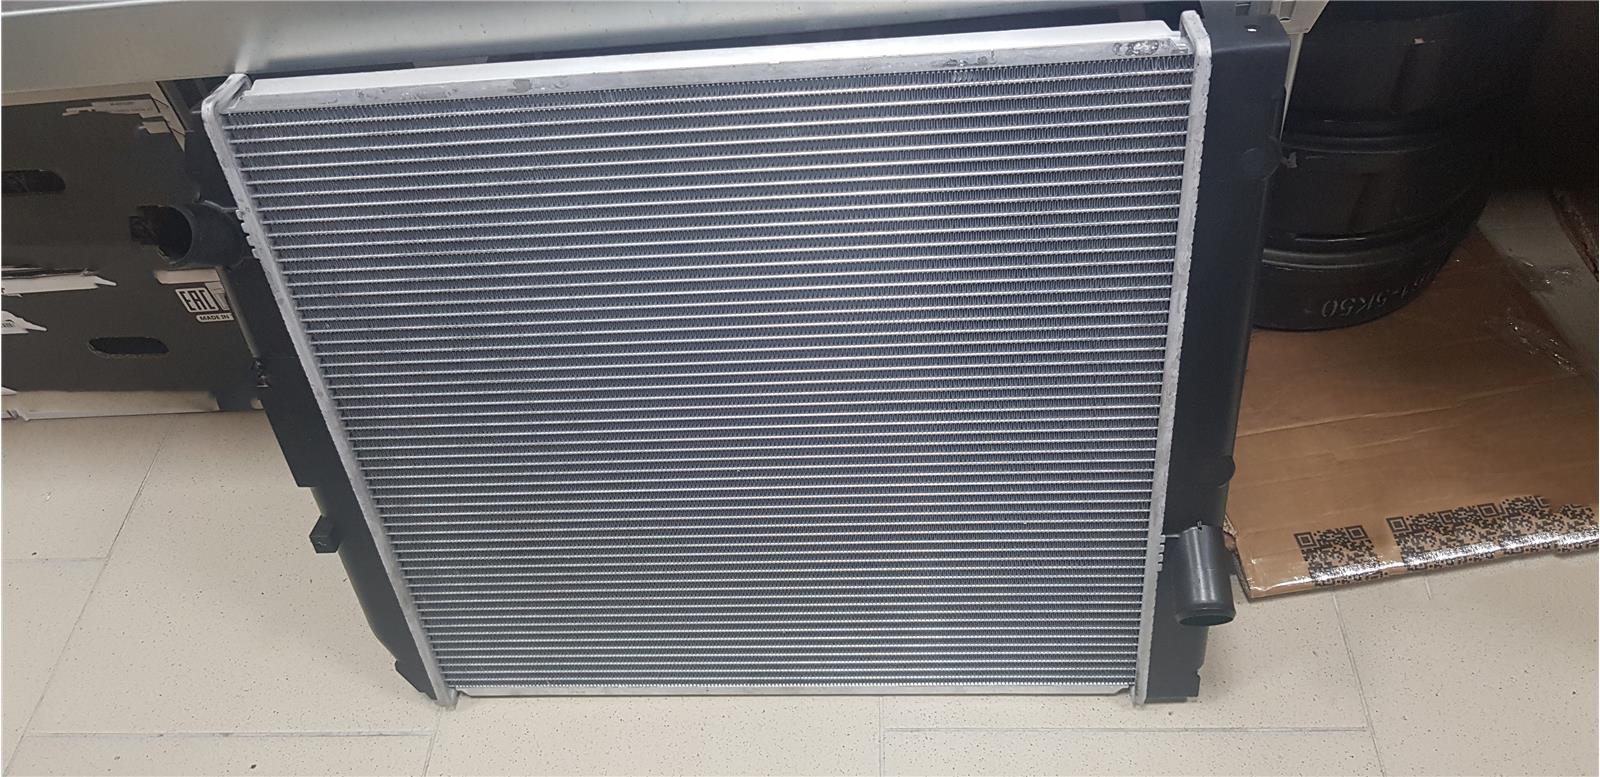 Поддерживаем оптимальную работу системы охлаждения: рекомендации по очистке радиатора Hino